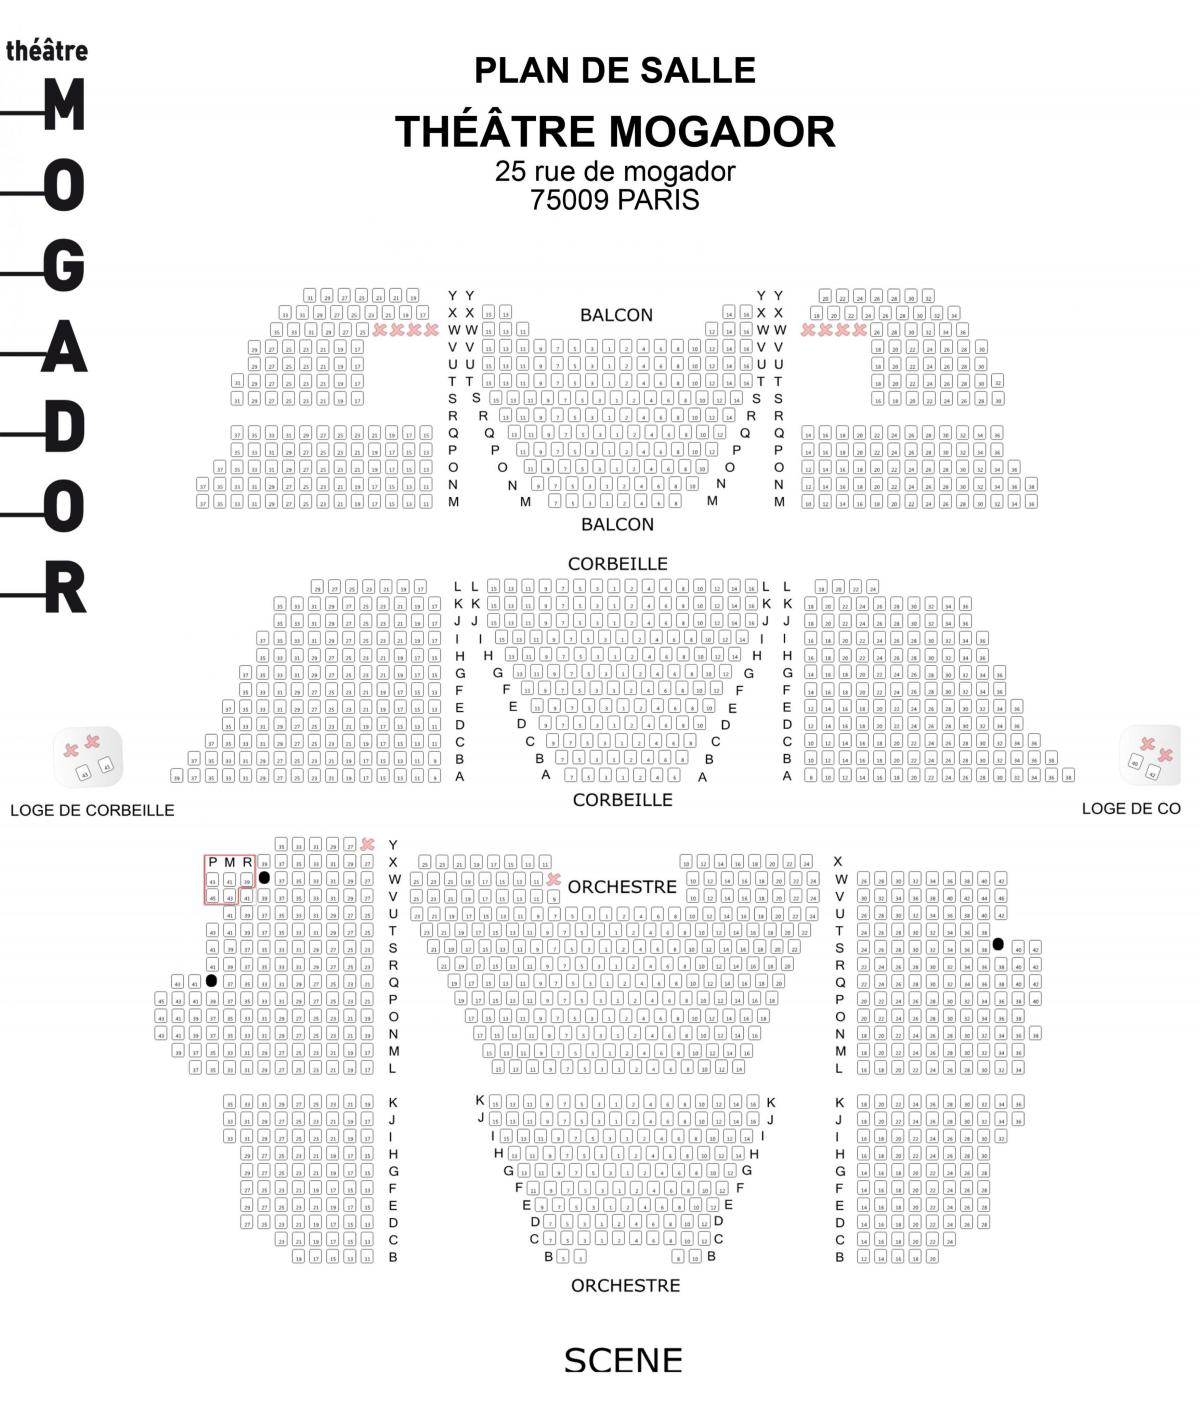 Карта позориште Могадор